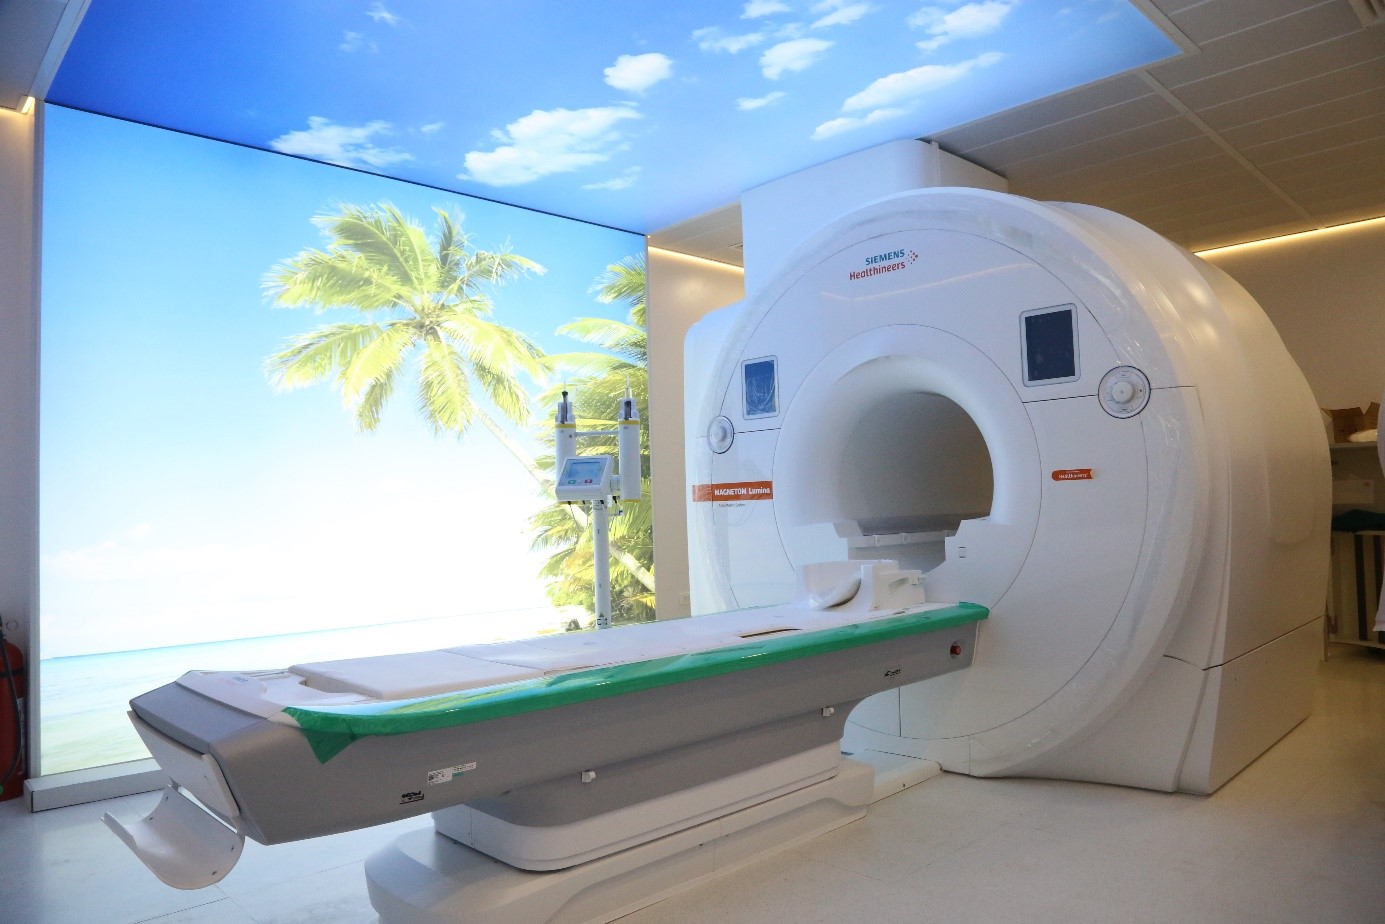 Hệ thống máy MRI 3.0 Tesla Magnetom Lumina (Siemens) được đặt tại Khoa Chẩn đoán hình ảnh – Bệnh viện đa khoa tỉnh Phú Thọ.